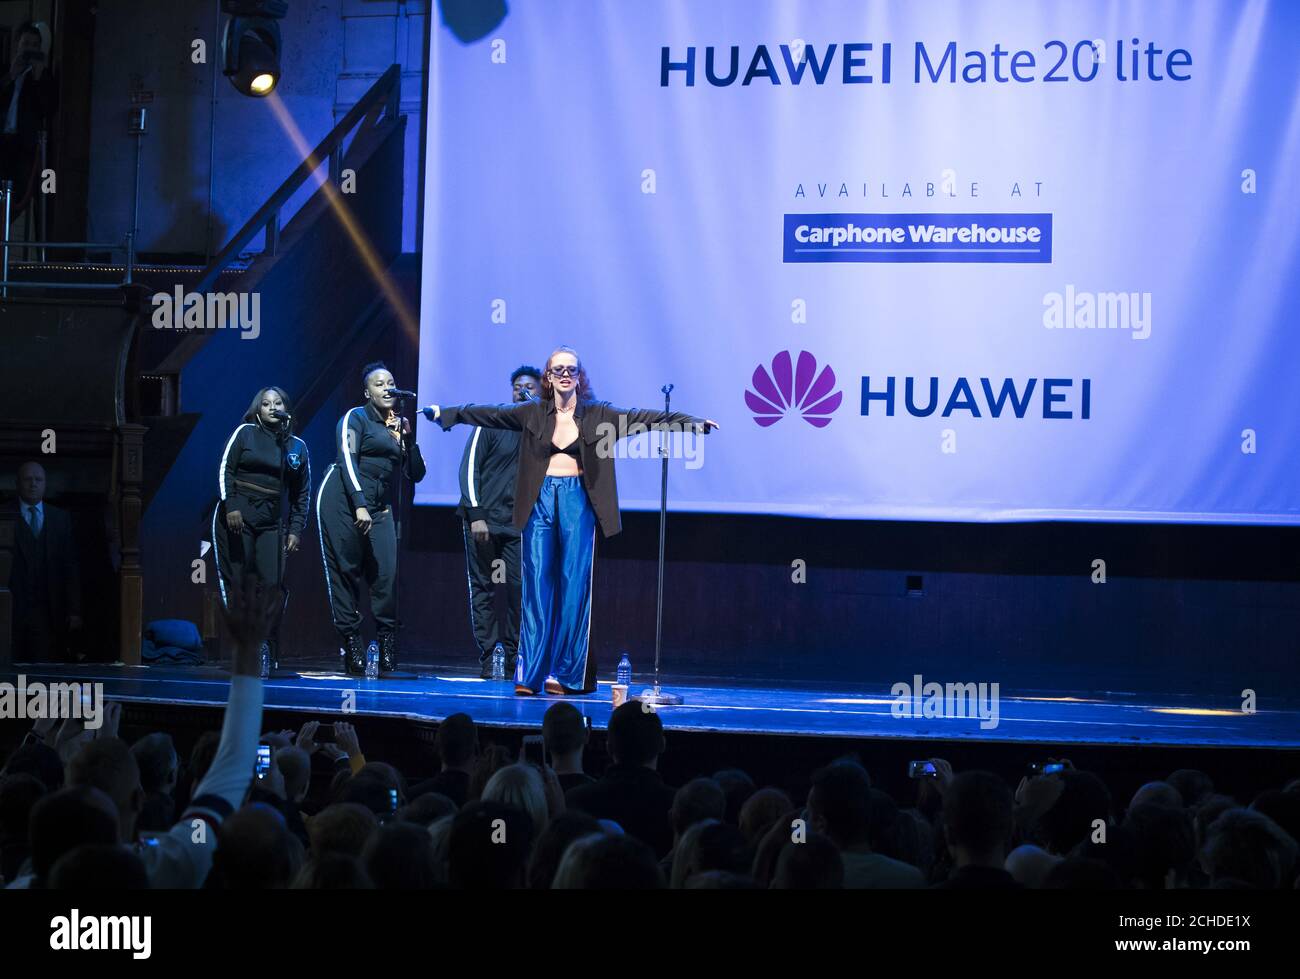 Jess Glynne se produit pour les fans de l'Albert Hall de Manchester, organisé par Huawei & Carphone Warehouse pour célébrer la sortie du nouveau combiné Mate 20 Lite. Banque D'Images